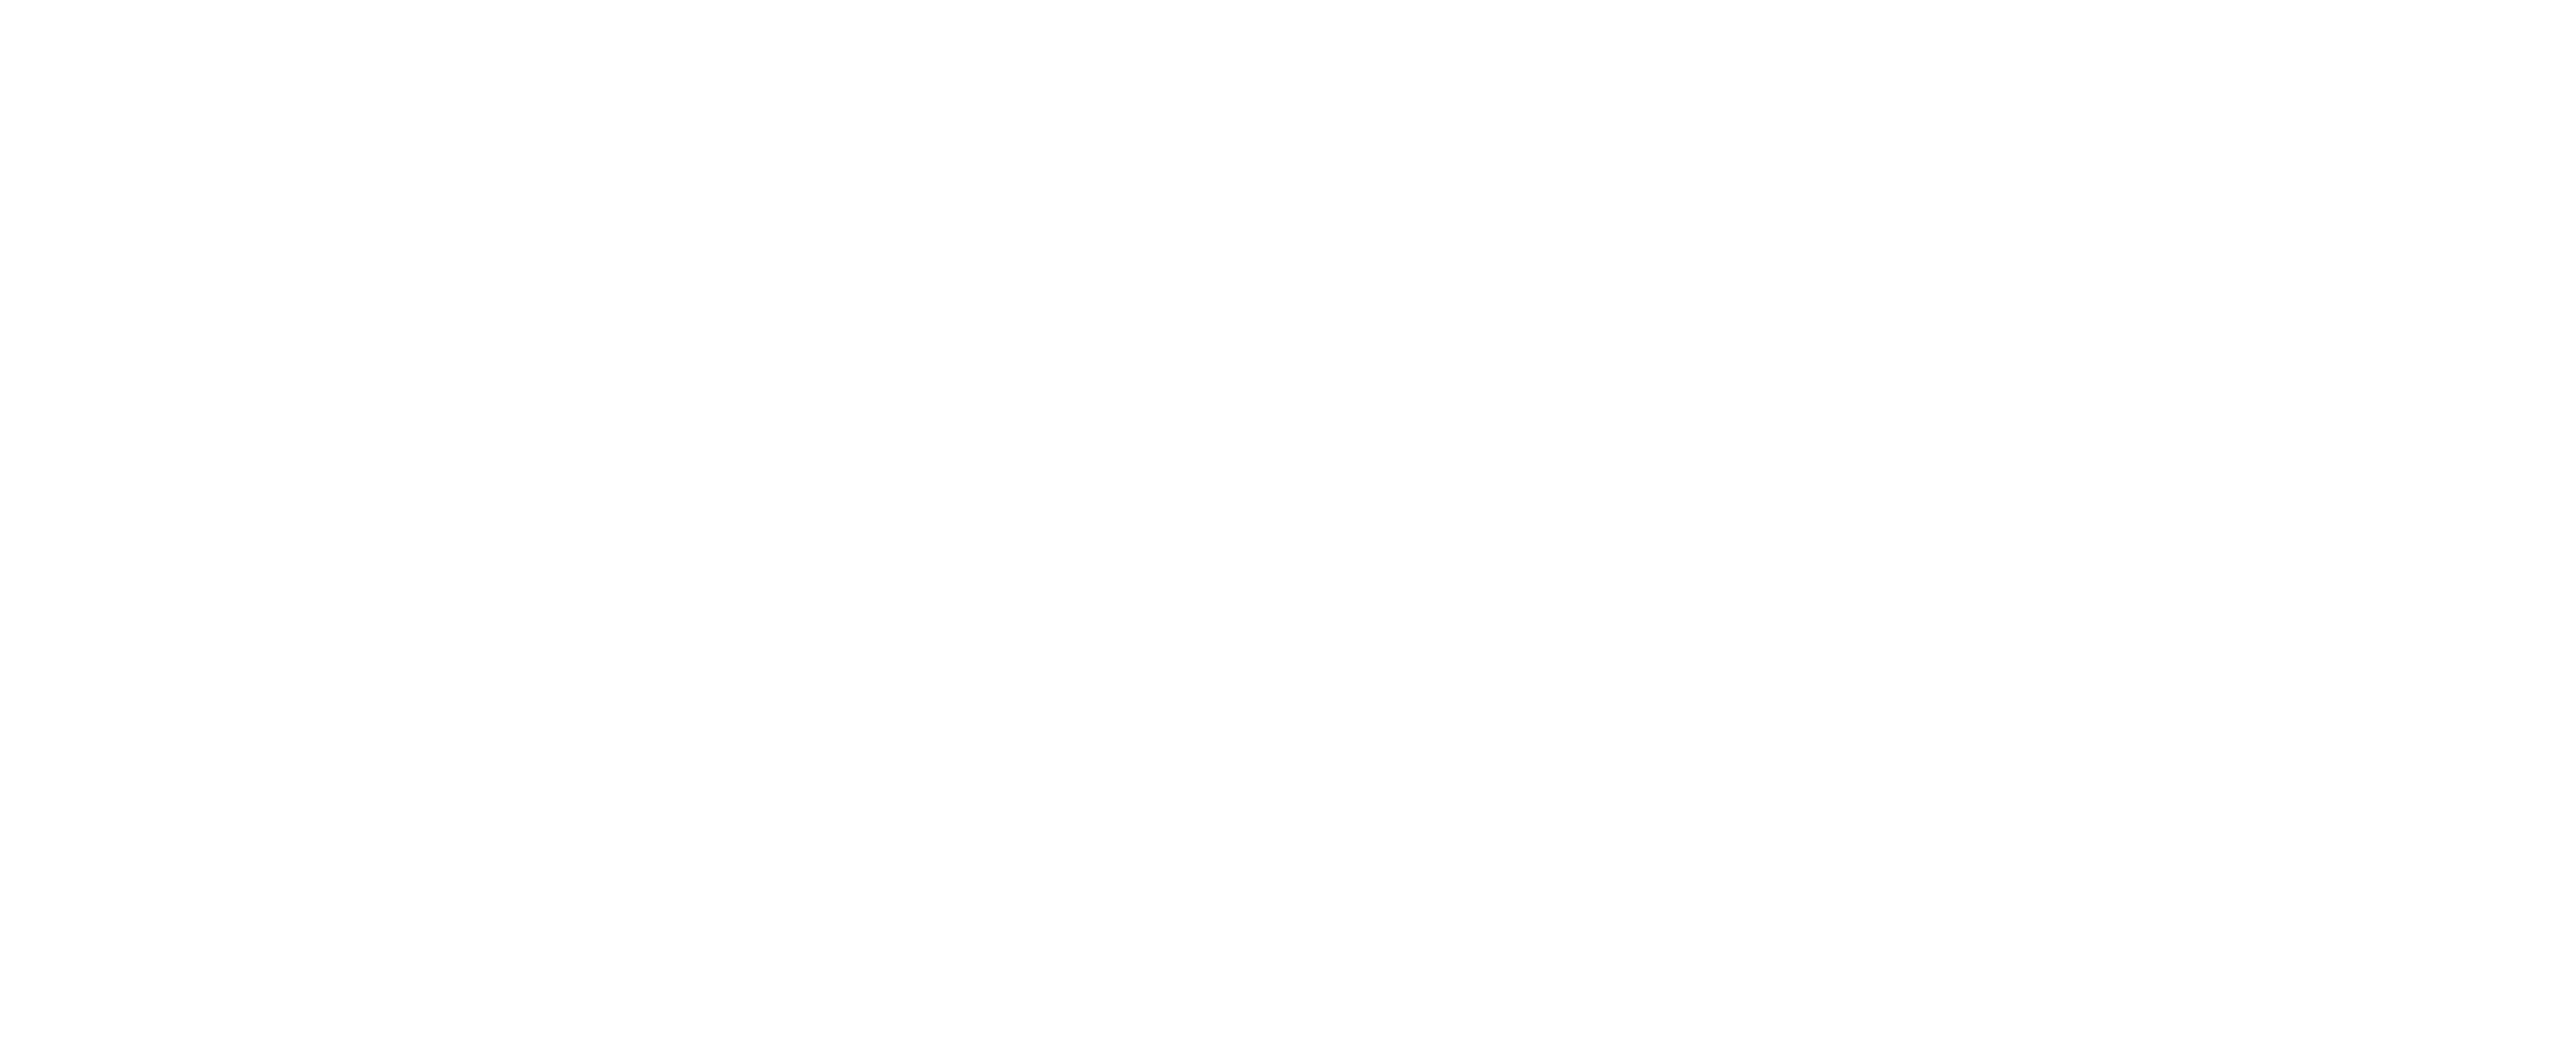 logo pilotów 21 biały